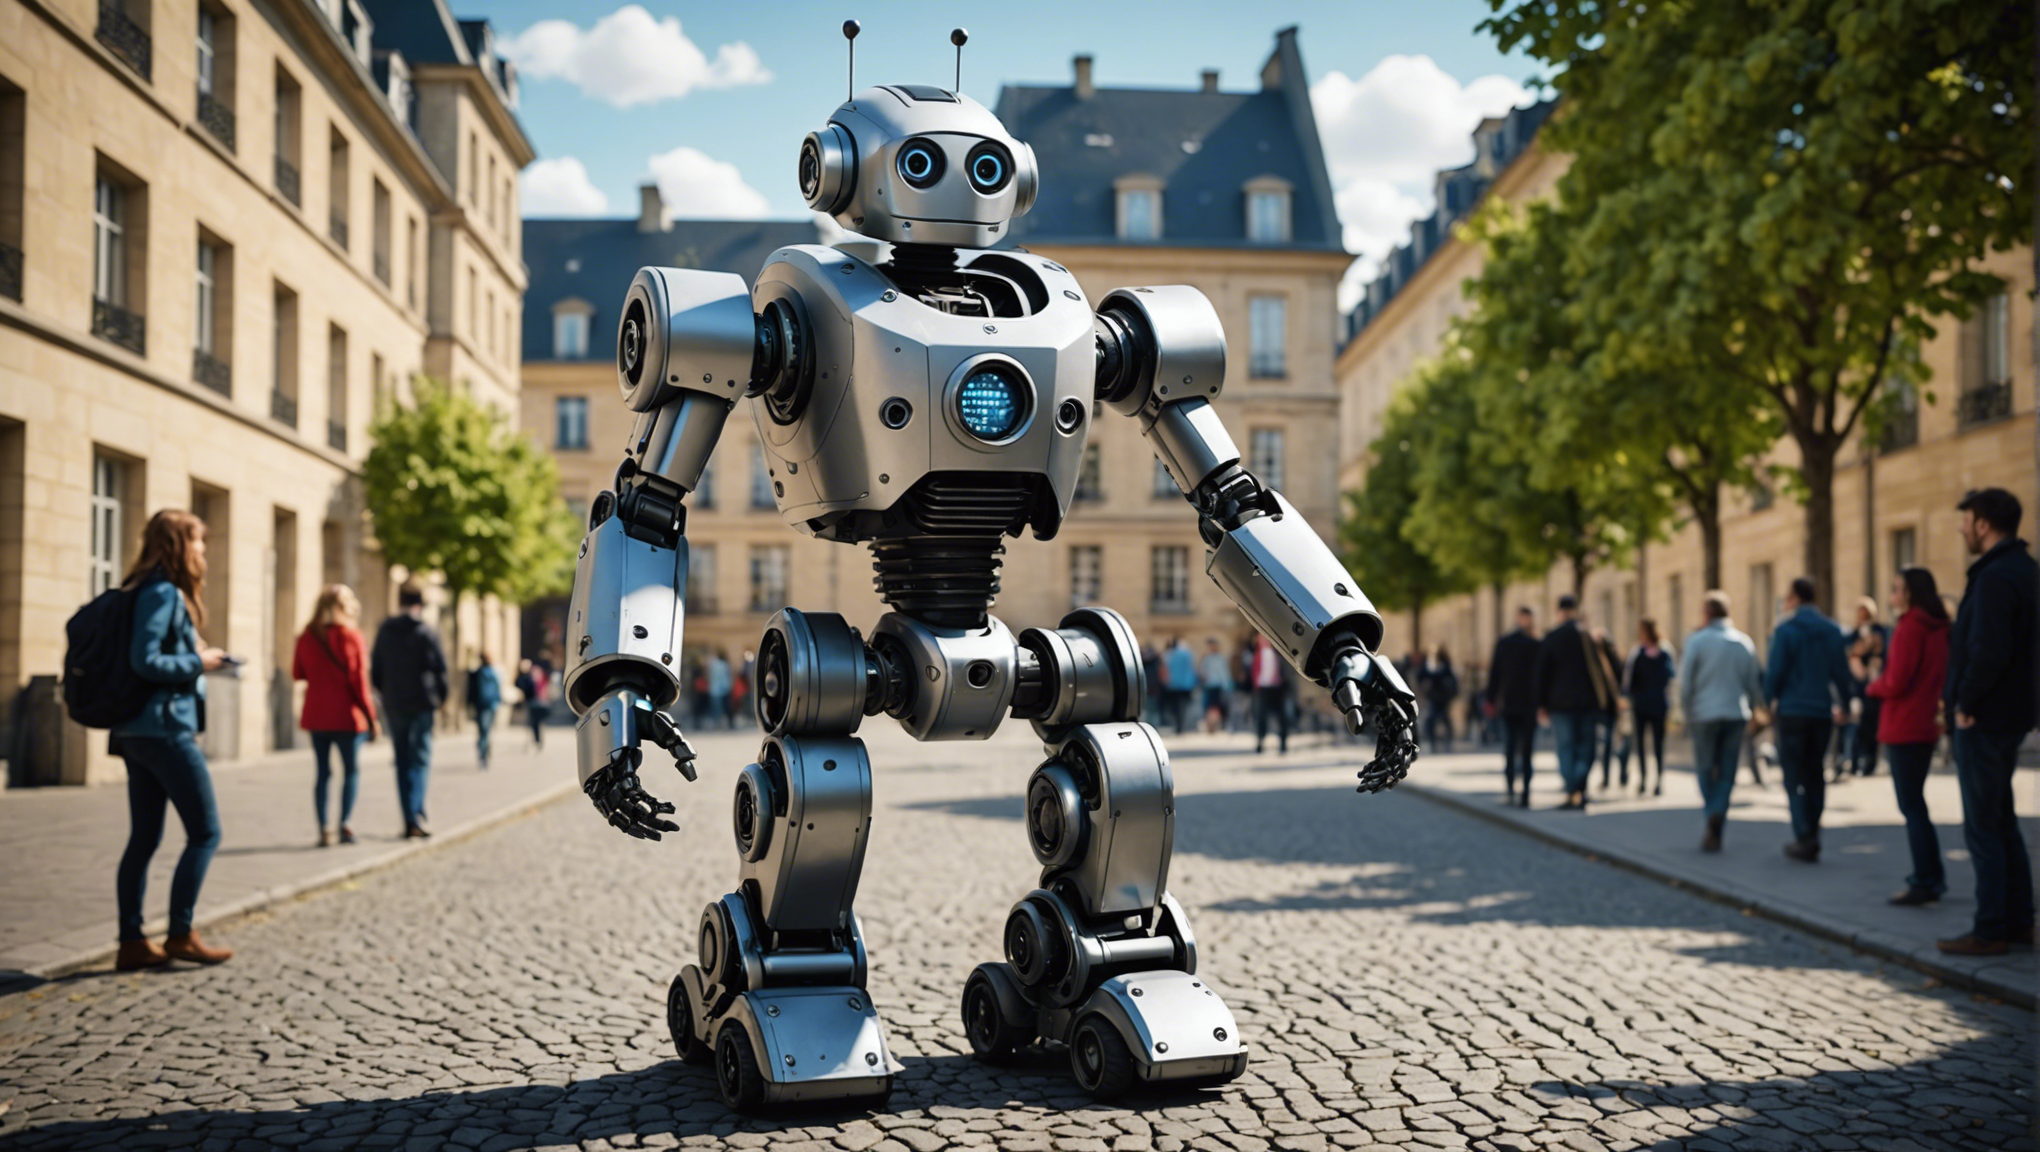 découvrez l'arrivée du robot baxter à l'ecole centrale de nantes (france) et son impact sur l'innovation technologique et l'enseignement supérieur.